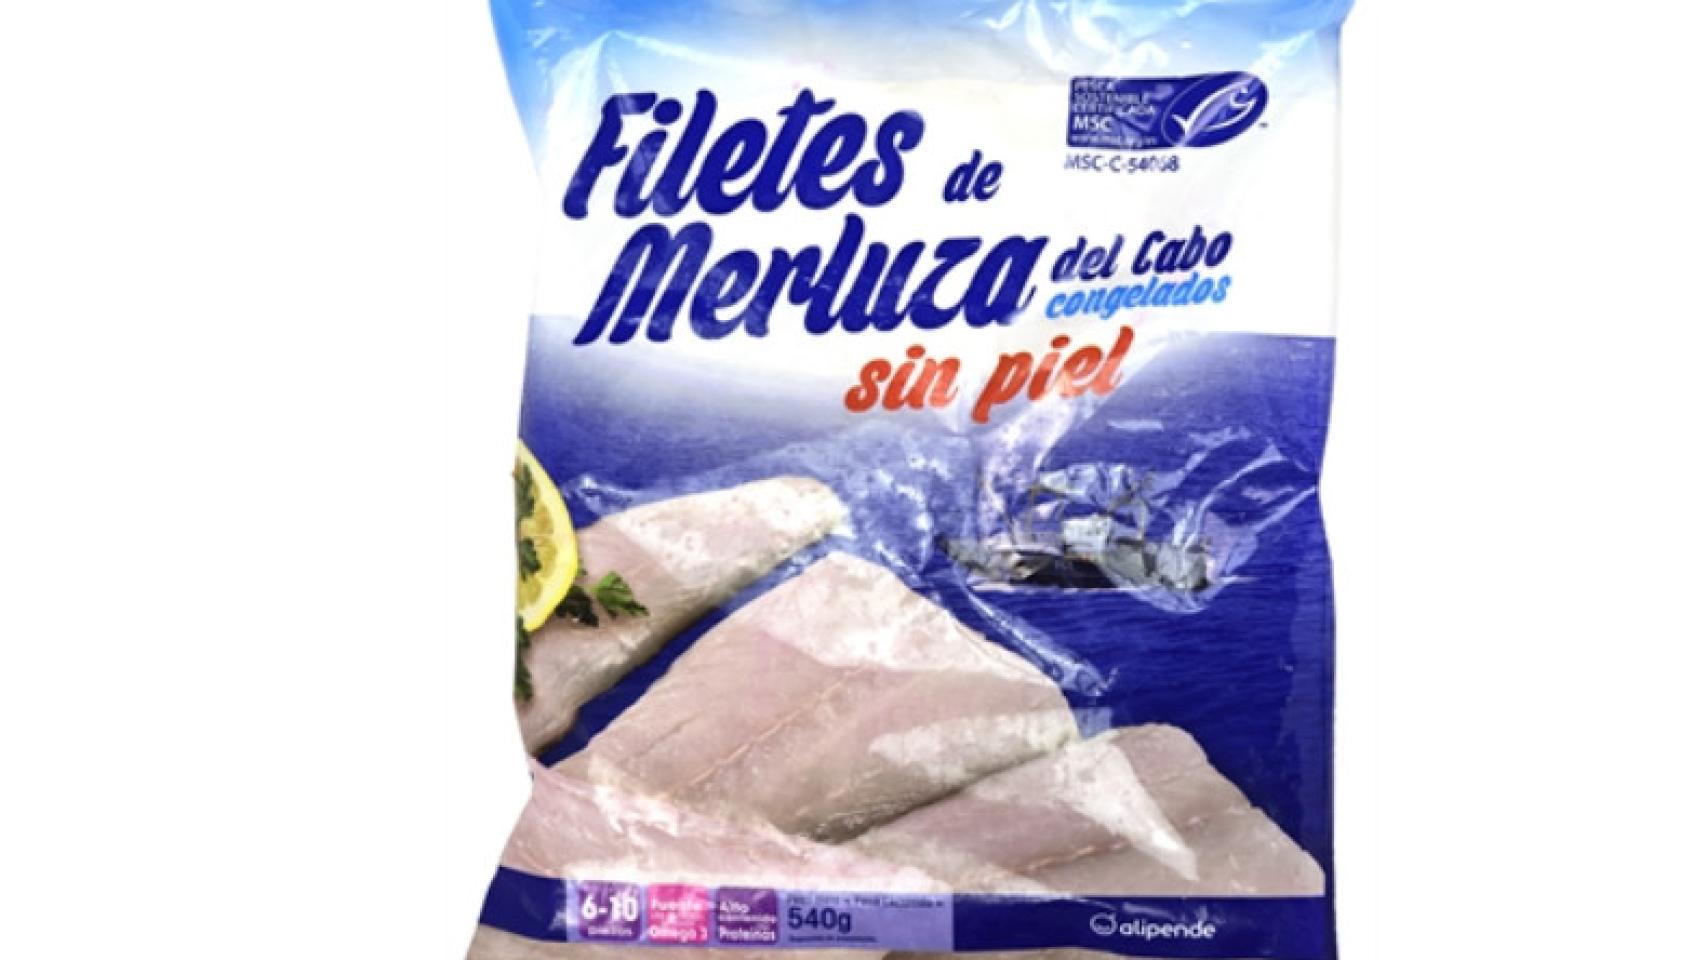 Merluza congelada disponible - Congelados Dominicanos Srl